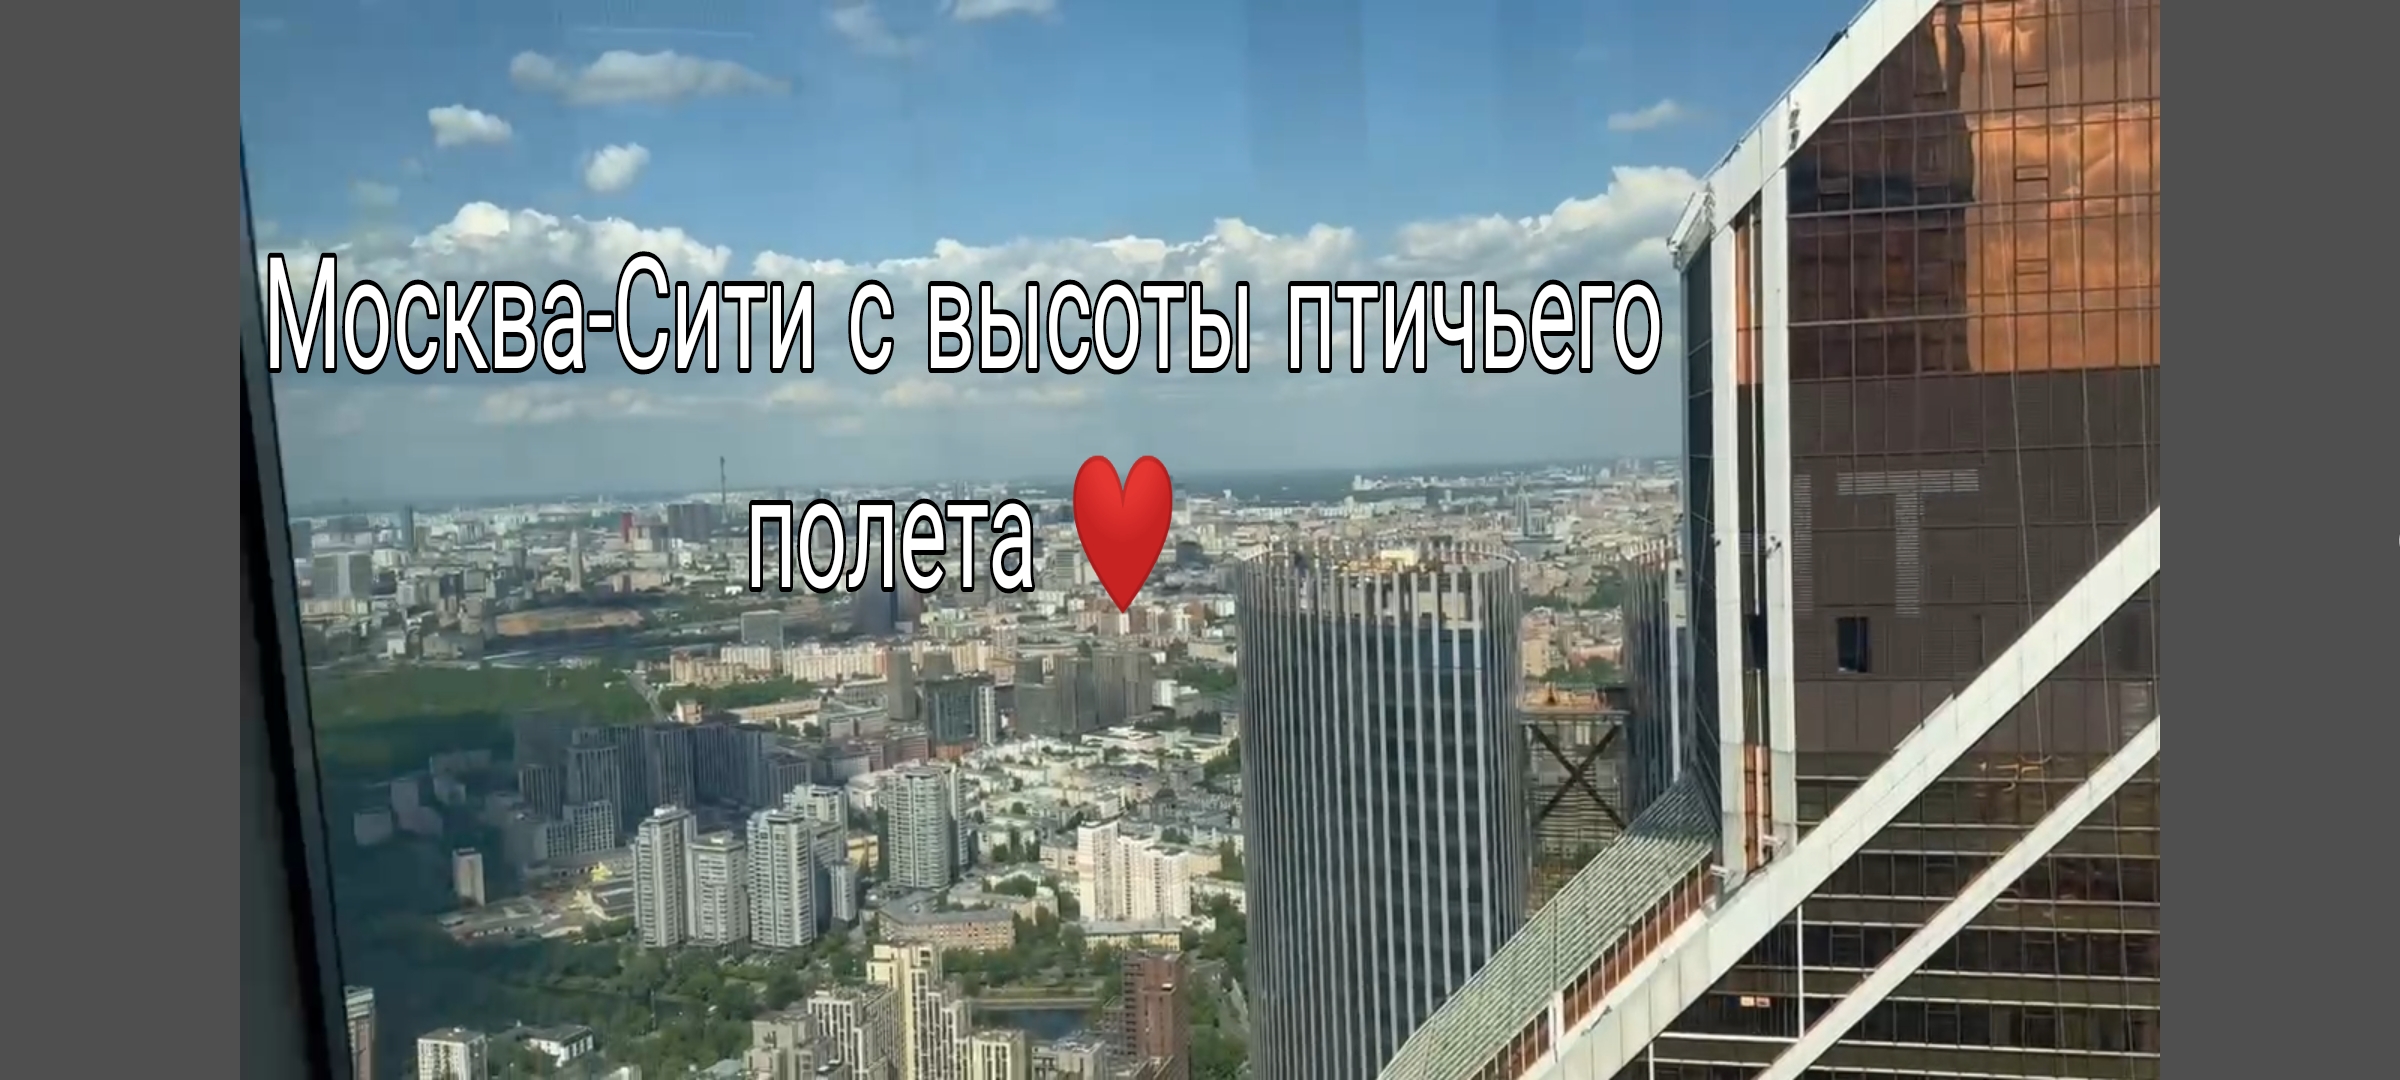 Москва-Сити взгляд с 81 этажа
Обзор с высоты 81 этажа Главной Башни Страны - Федерации!